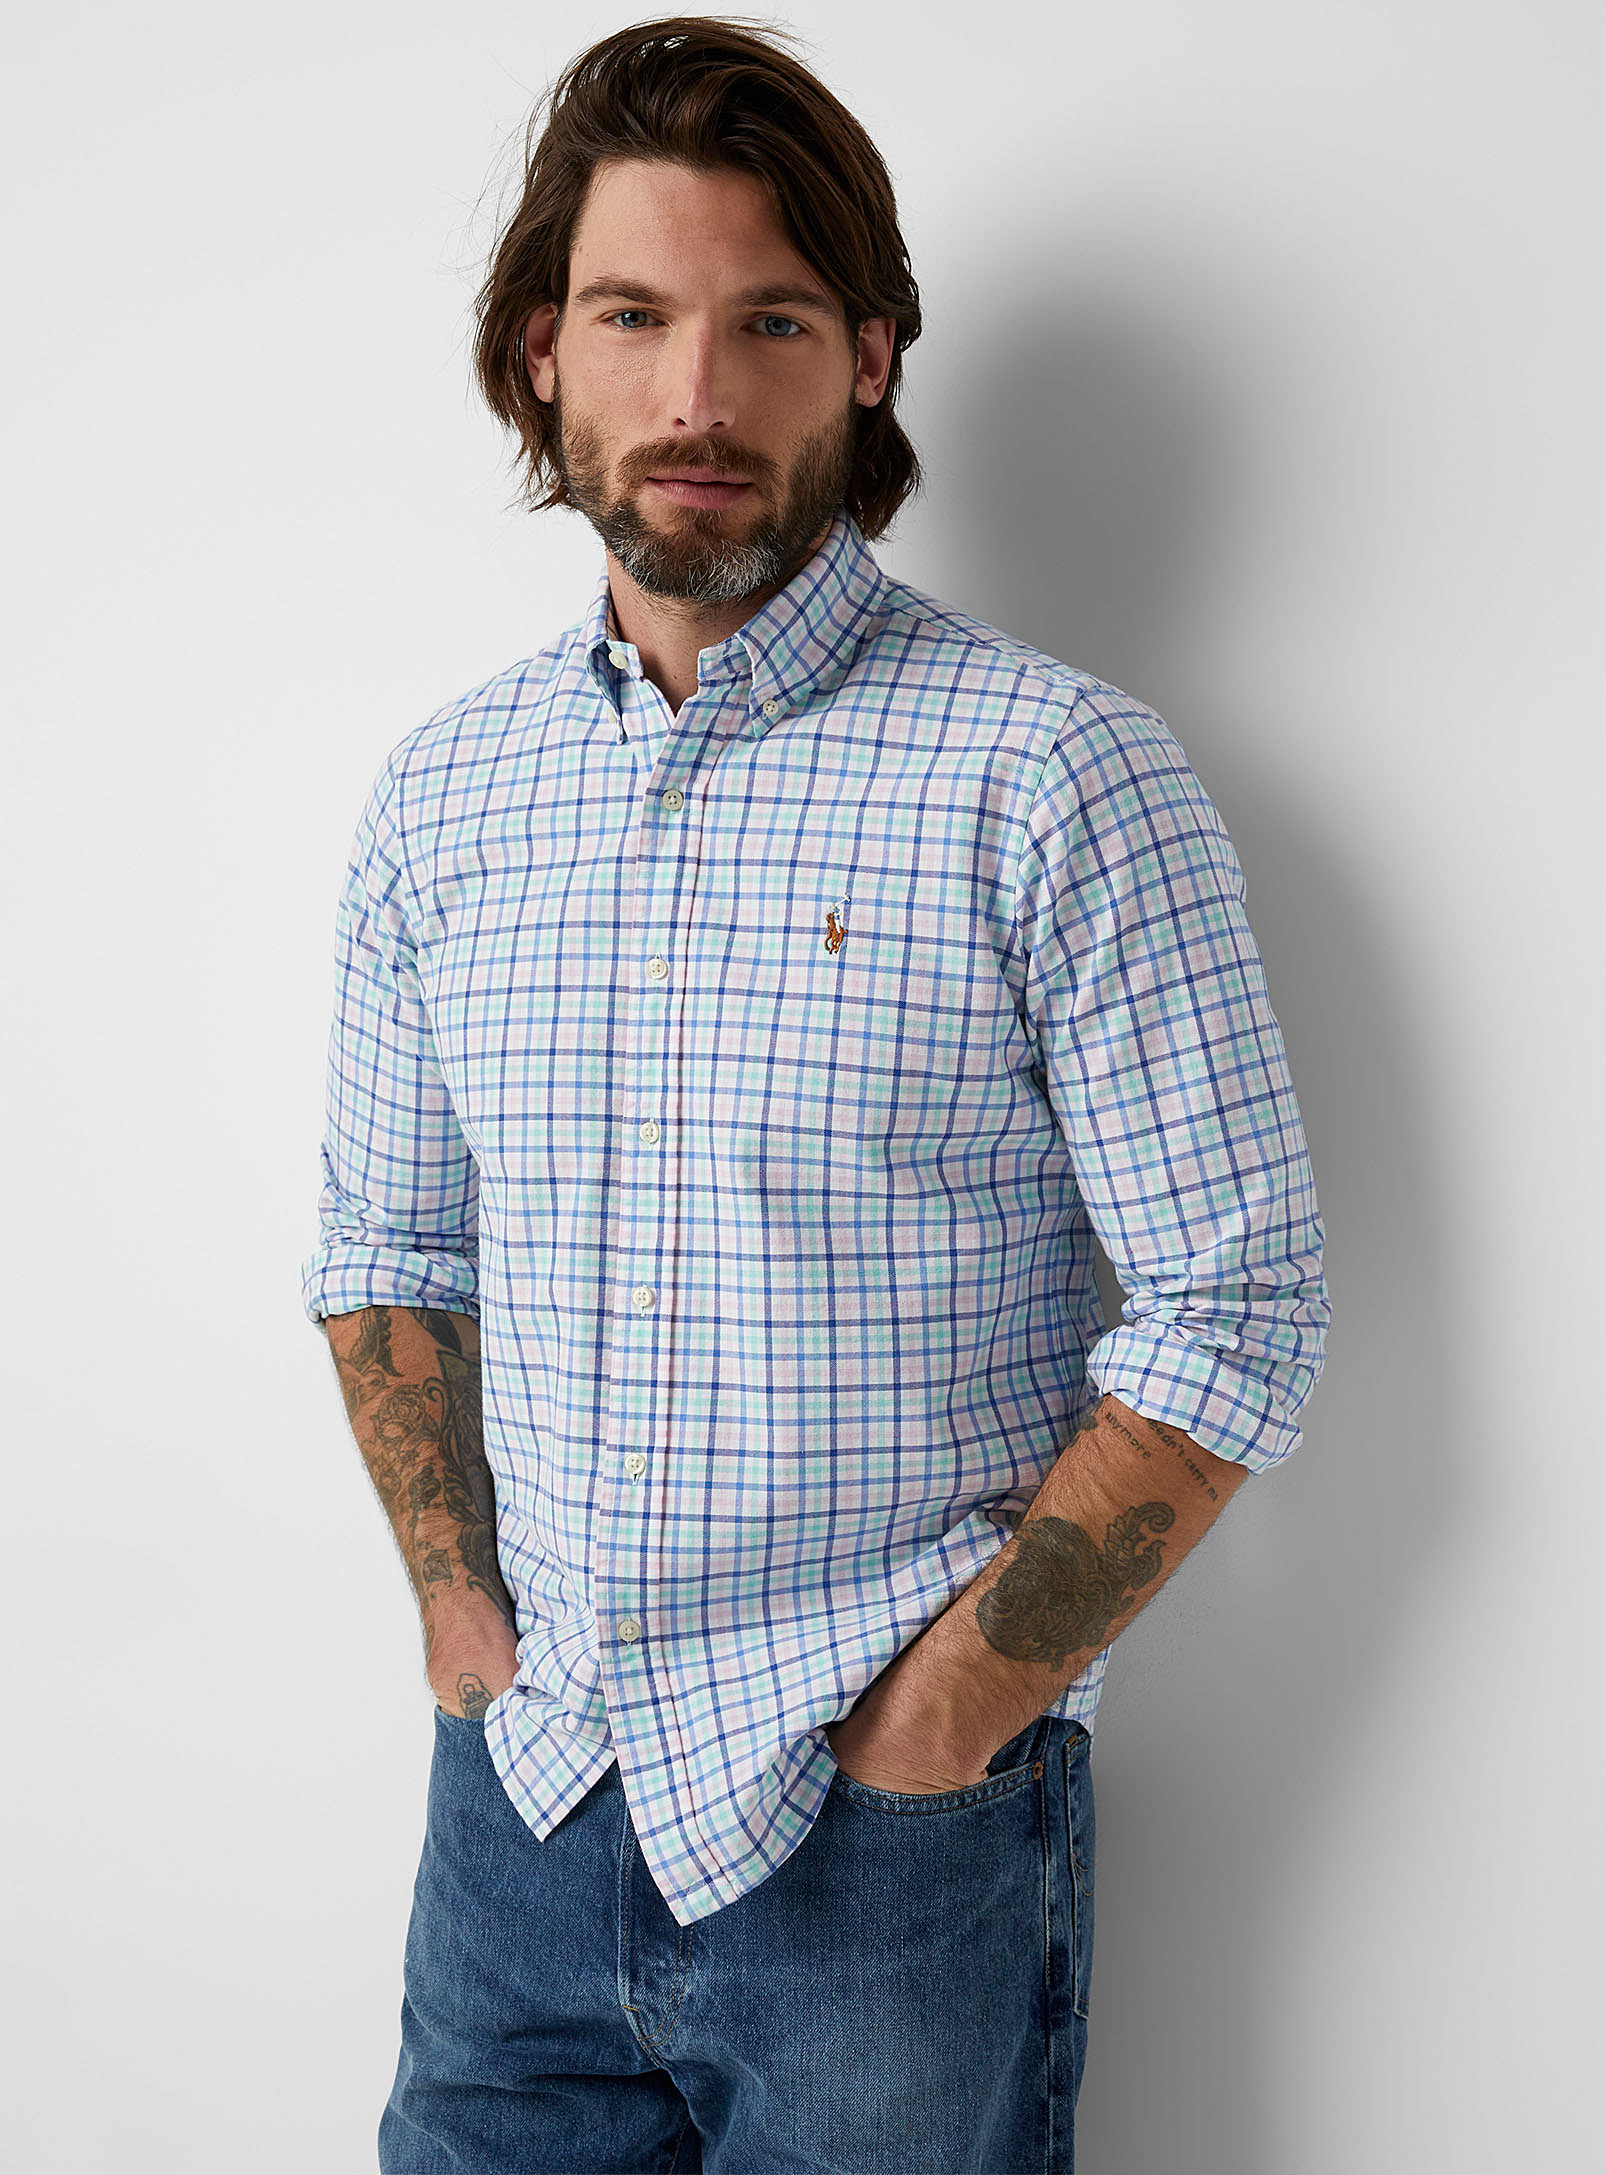 Polo Ralph Lauren - La chemise carreaux pastel